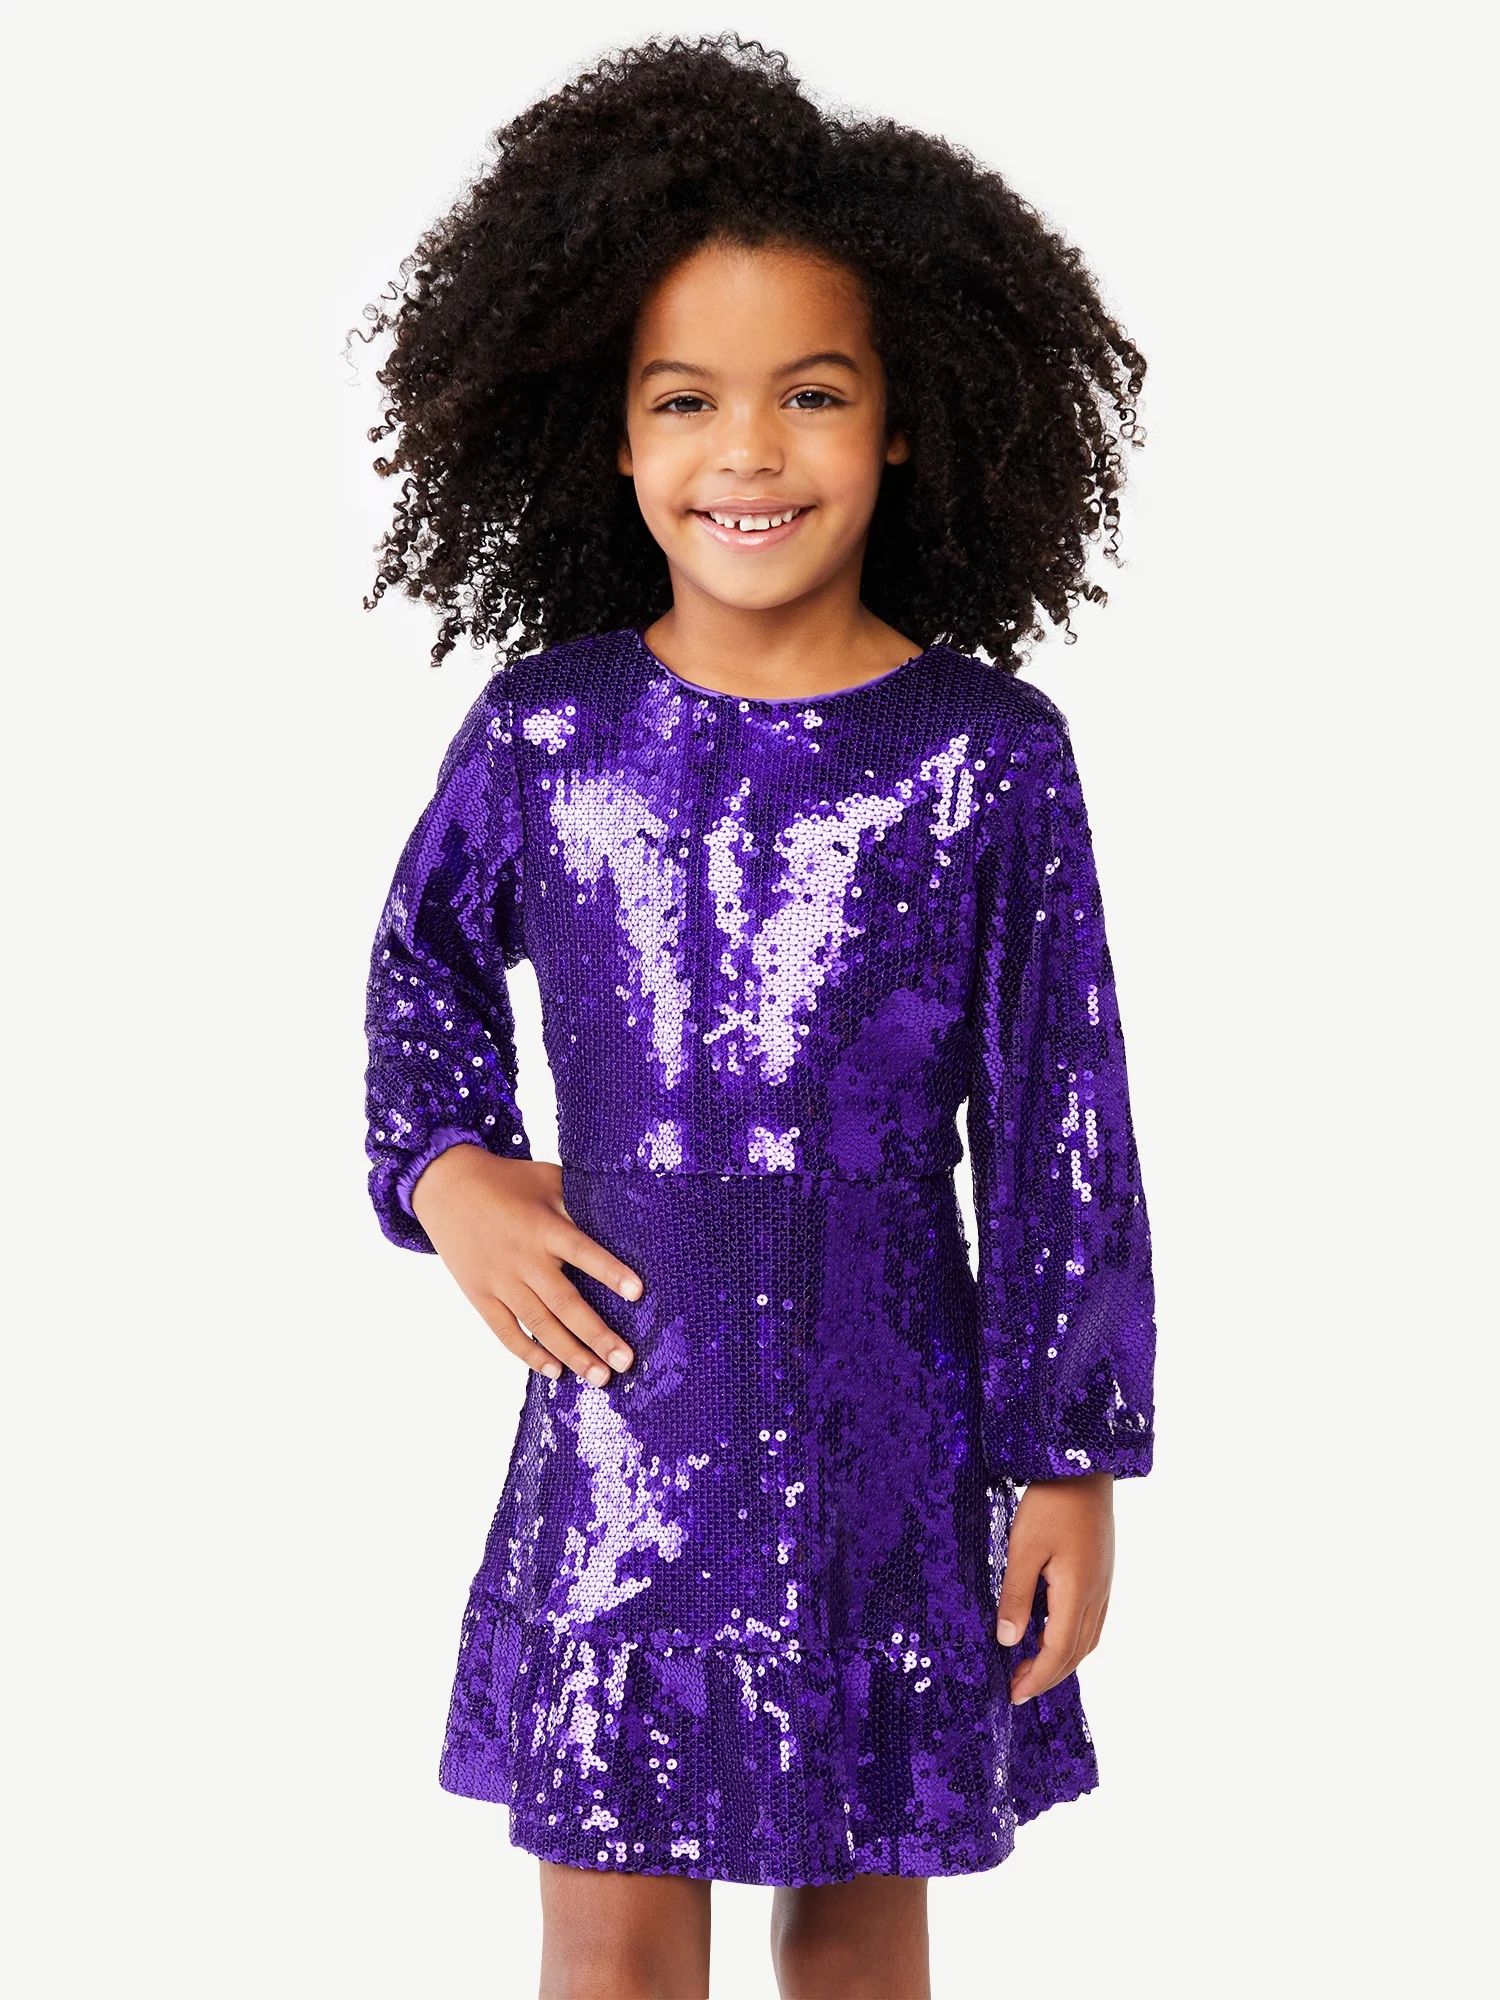 Scoop Girls Ruffle Tier Sequin Dress with Long Sleeves, Sizes 4-12 - Walmart.com | Walmart (US)